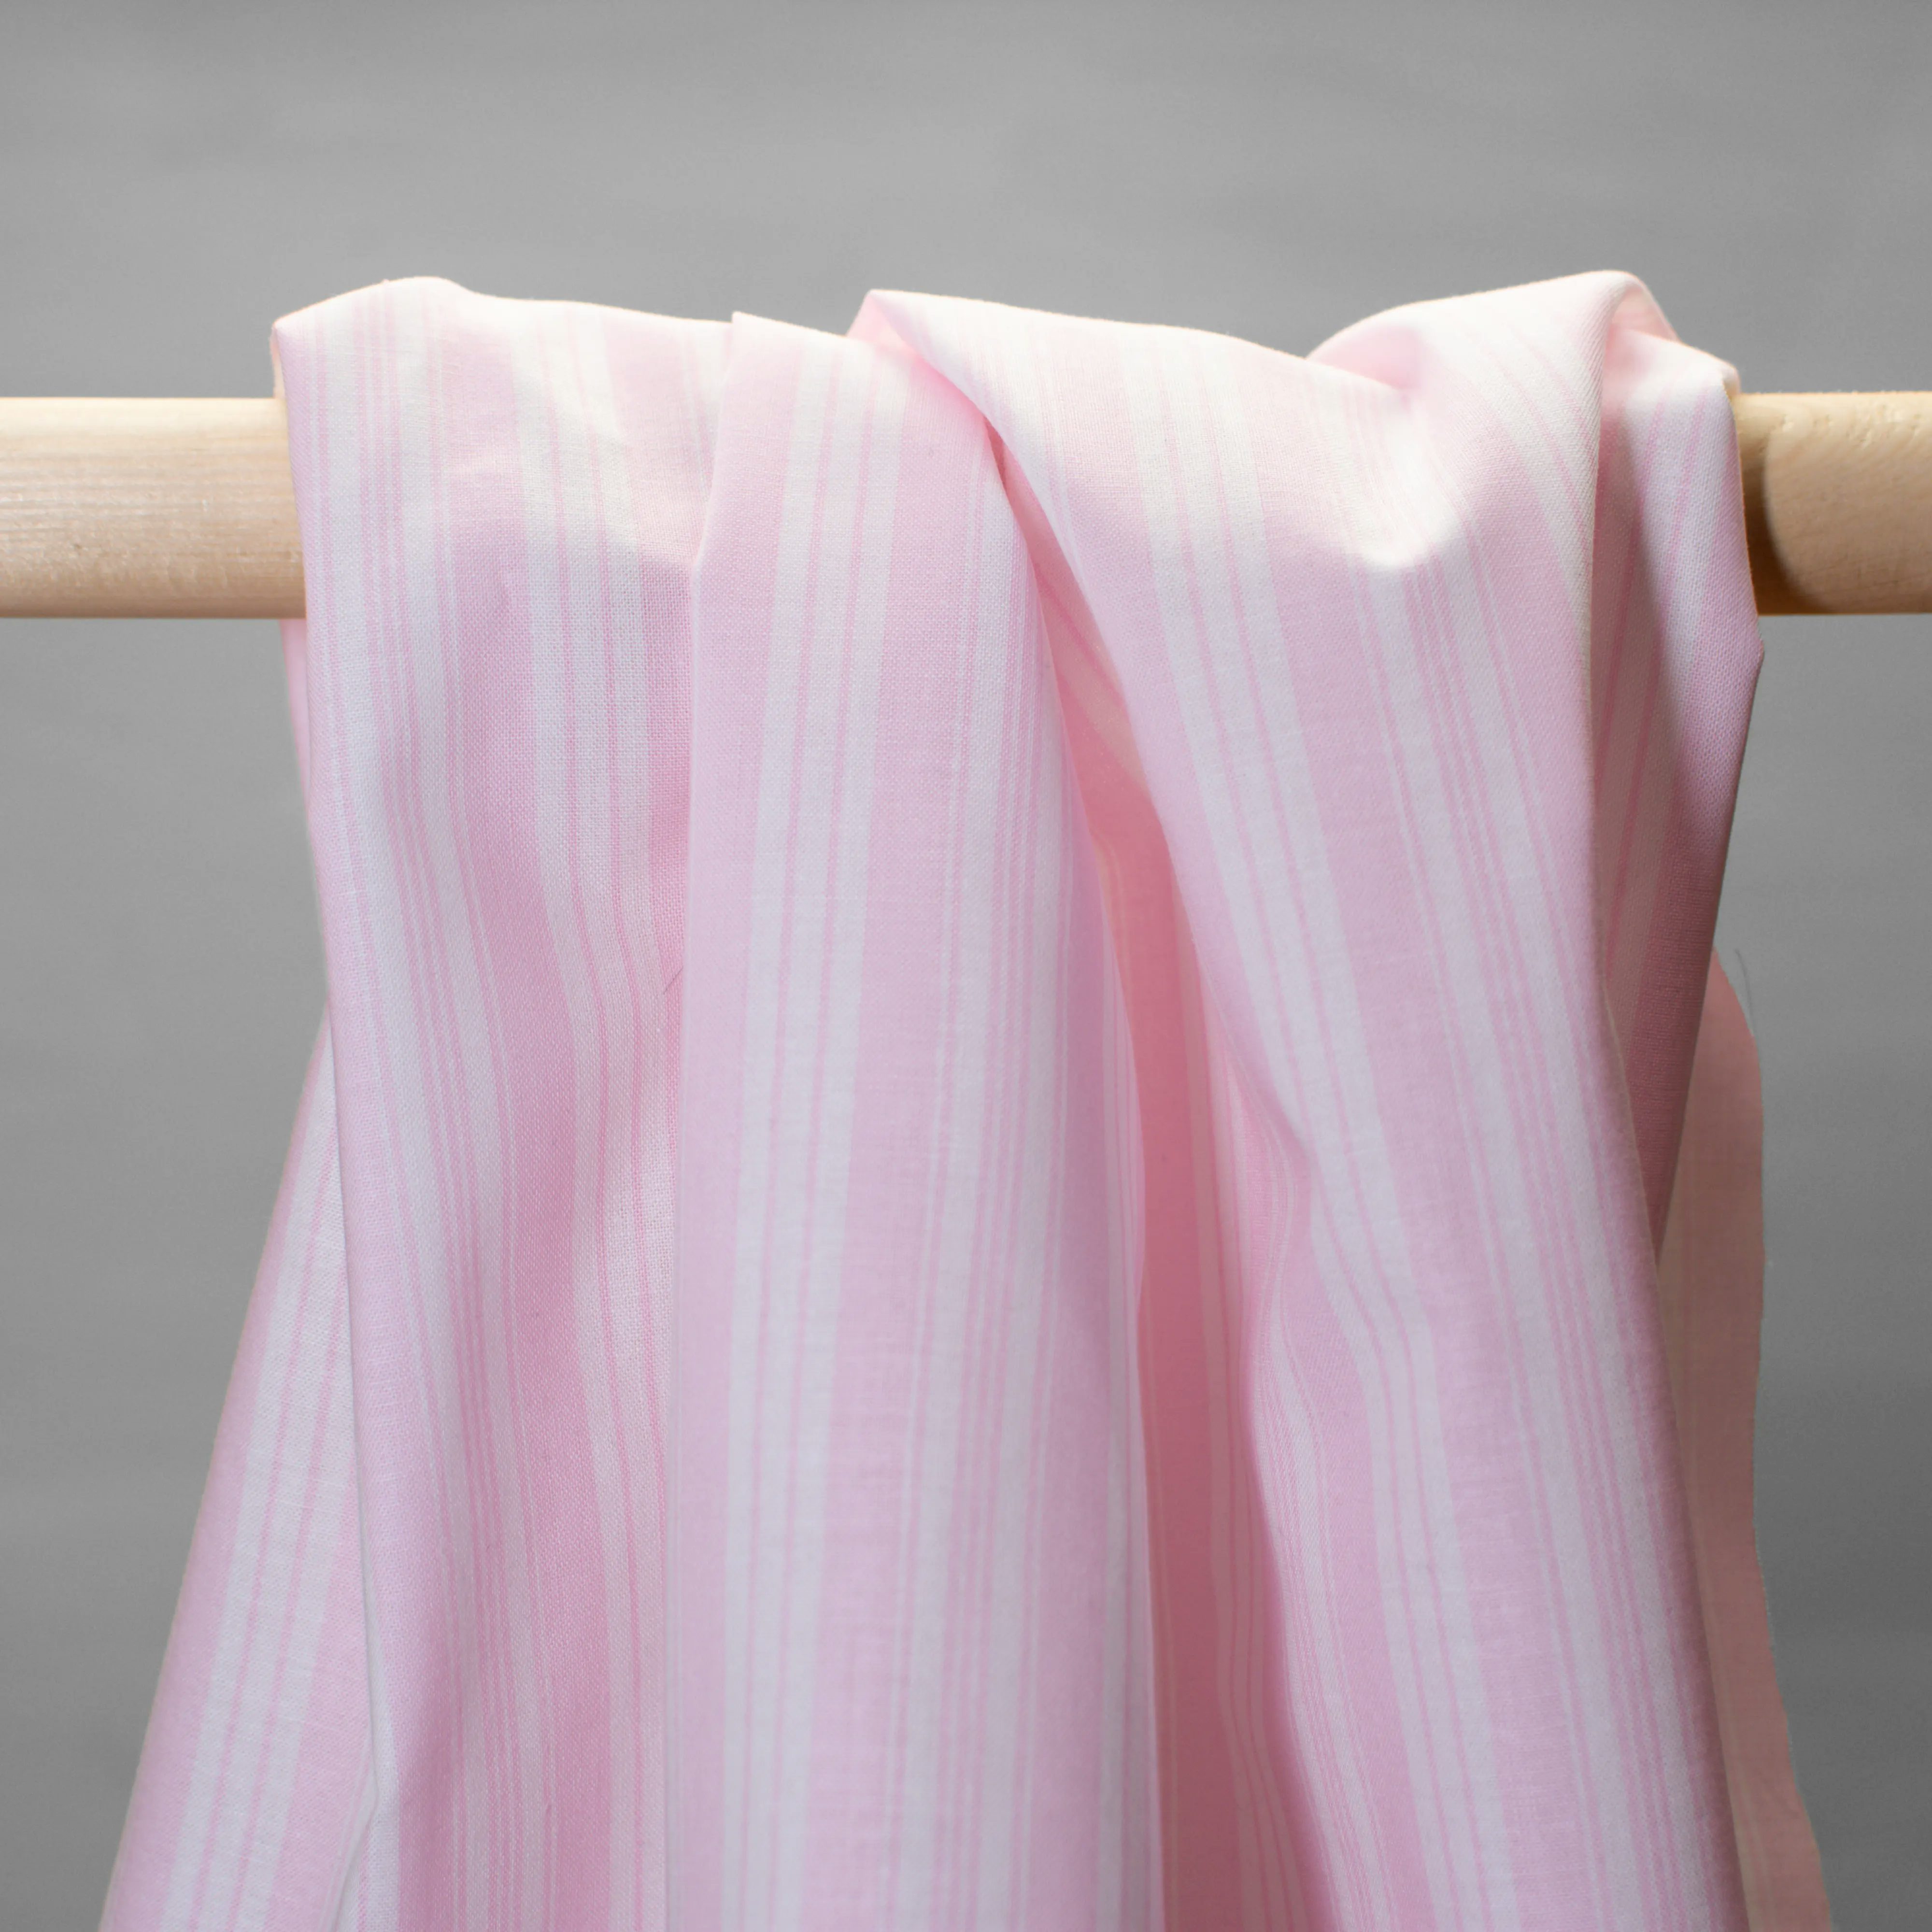 Baumwolle - Batist - Streifen rosa